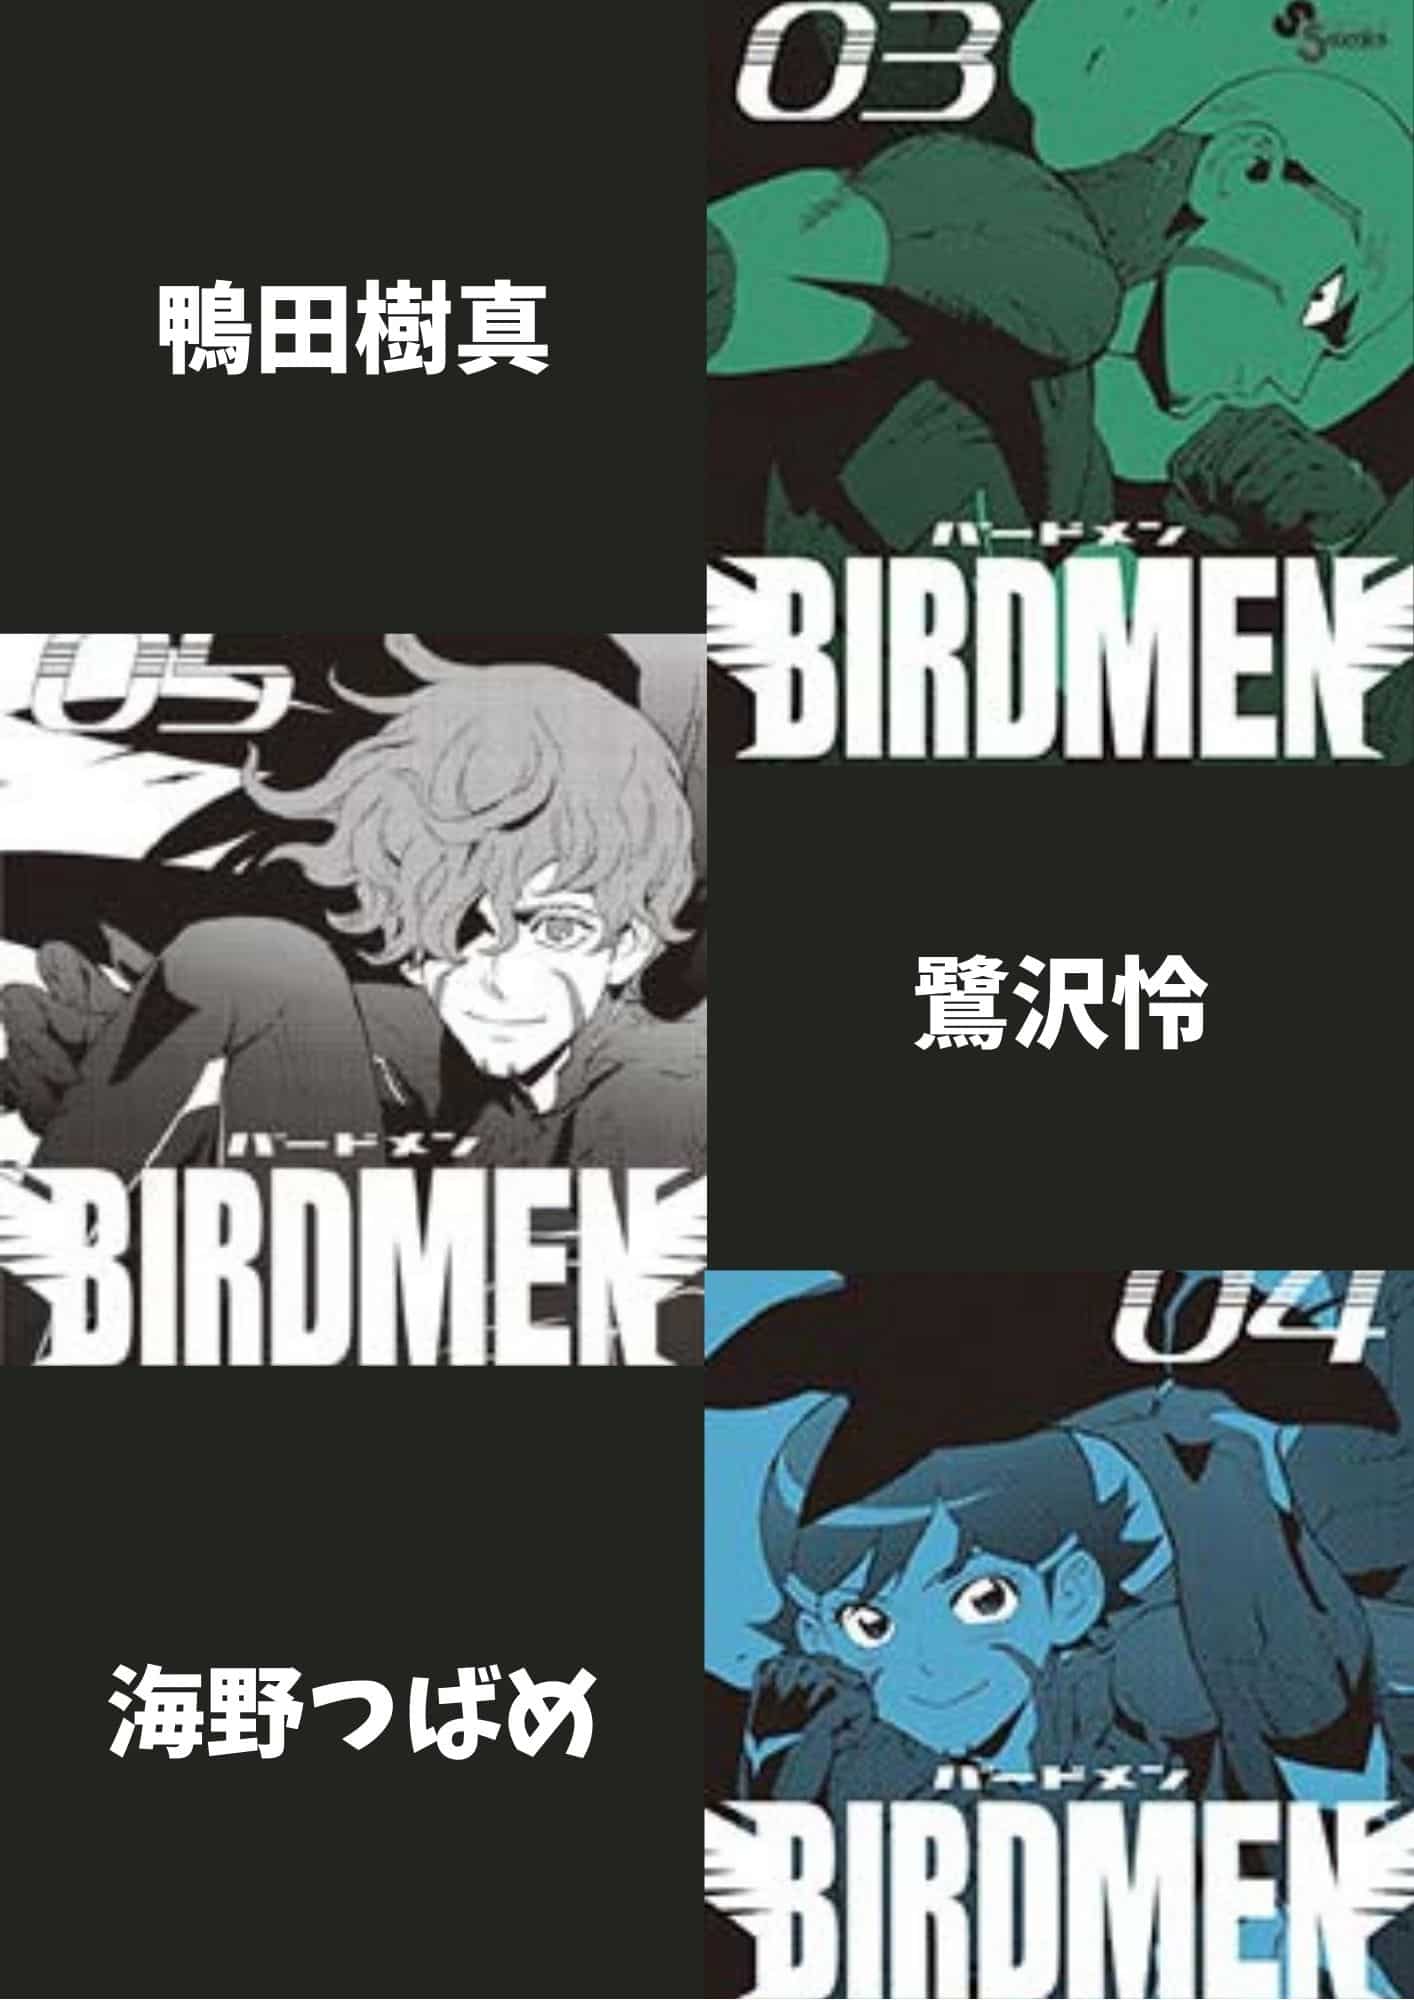 漫画 Birdmen はキャラクターに魅力満載 青春sf物語をネタバレありで考察 ホンシェルジュ